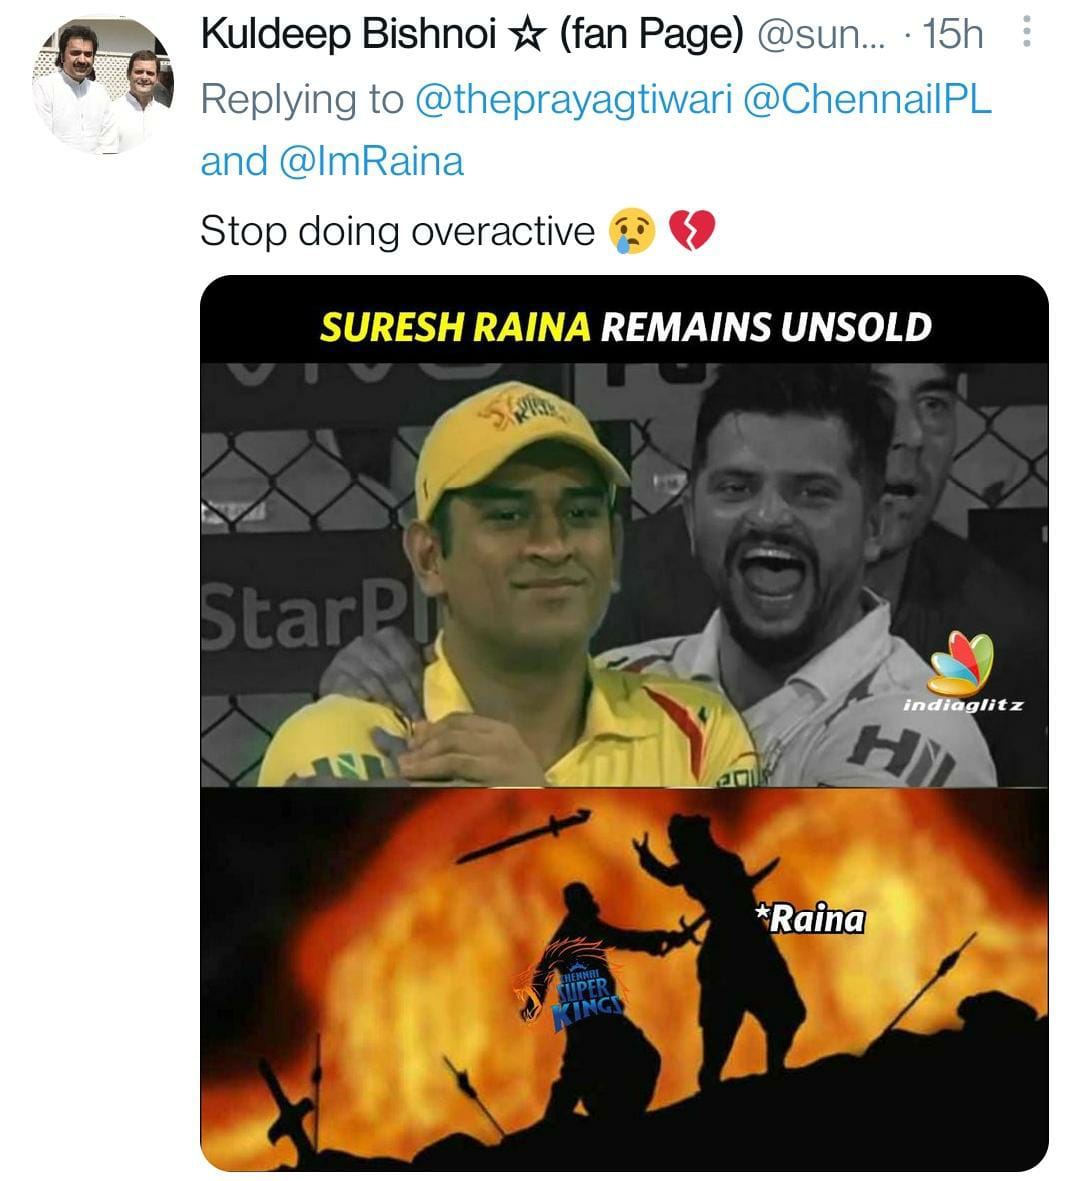 IPL Auction 2022: Suresh Raina को न खरीदे जाने पर Chennai Super Kings पर फूटा फैंस का गुस्सा, शेयर हो रहे ऐसे मीम्स